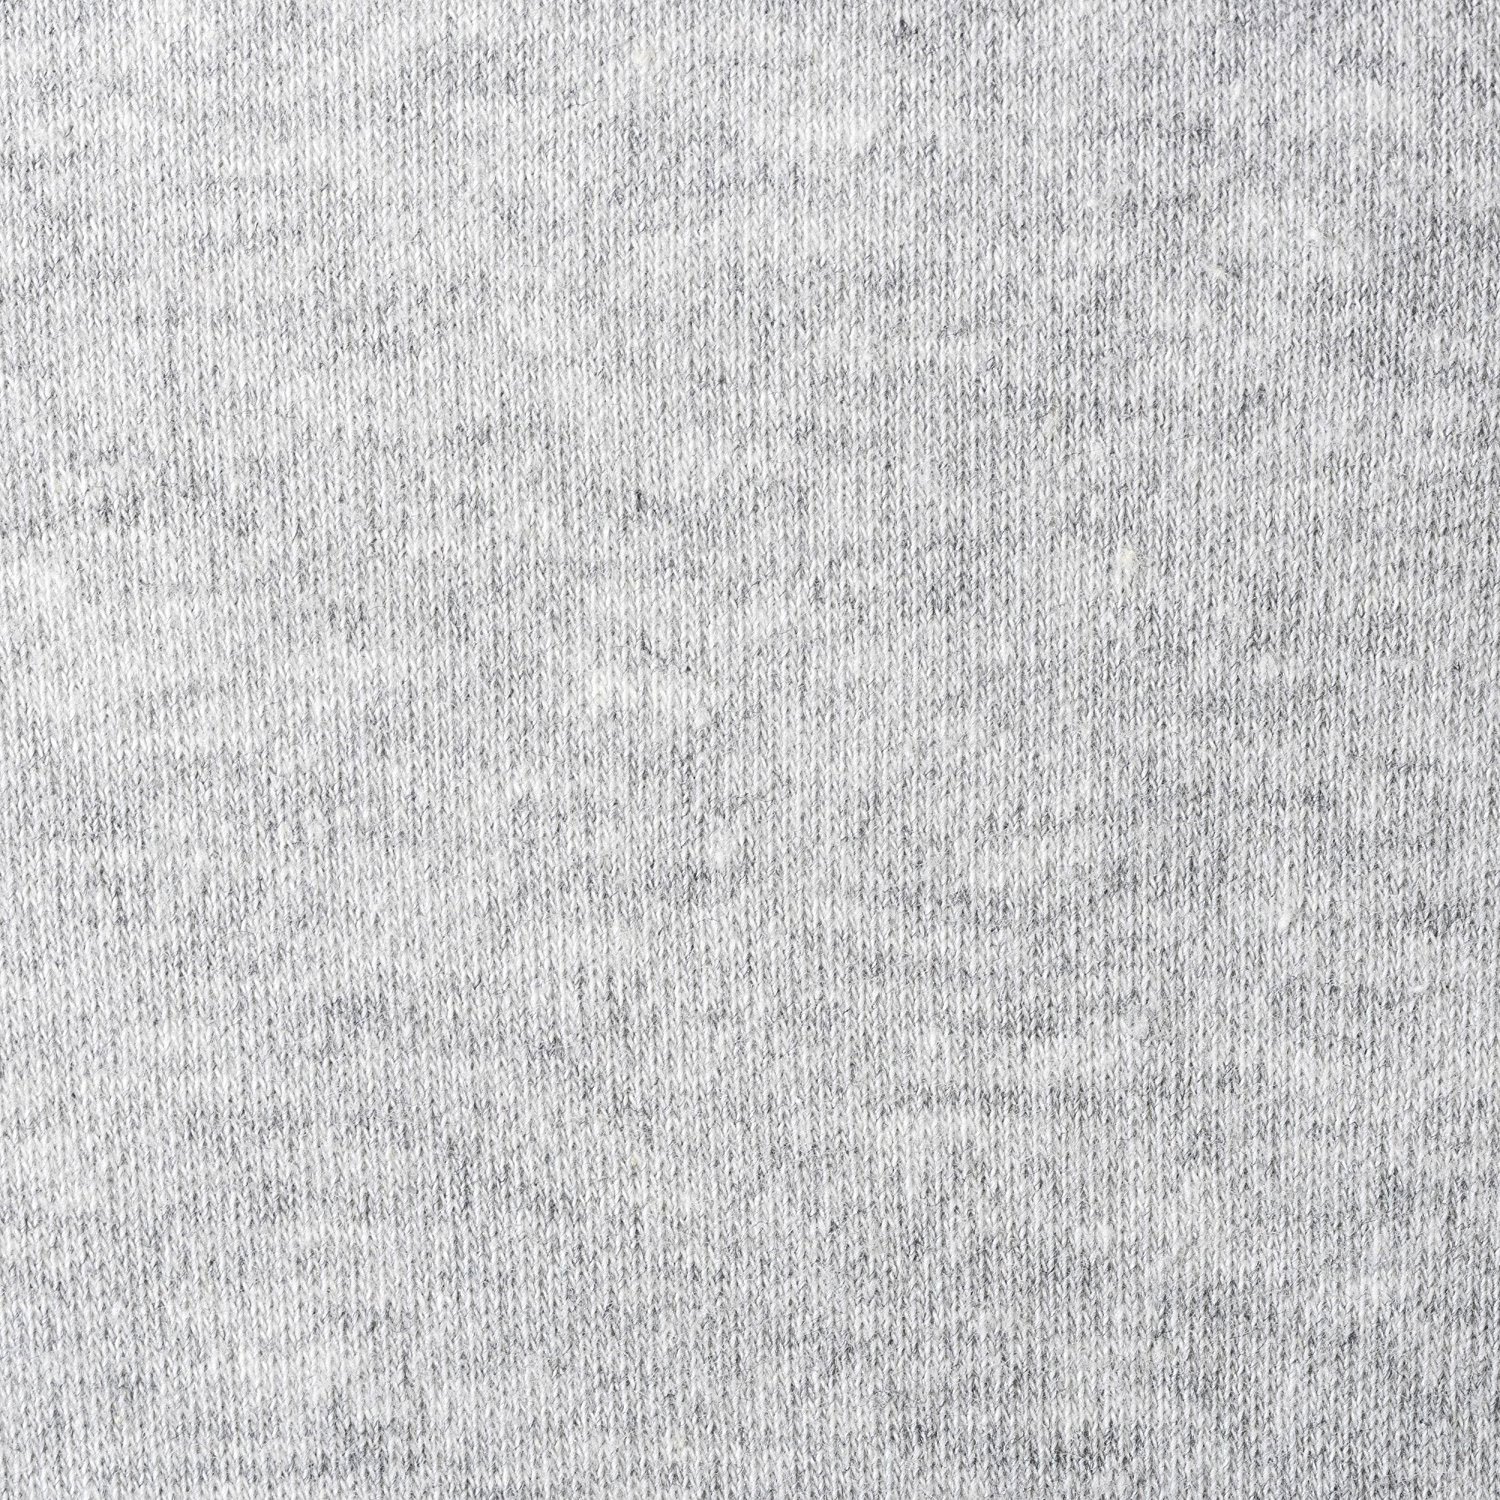 Halo Sleepsack Cotton Wearable Blanket, Heather Gray, Medium